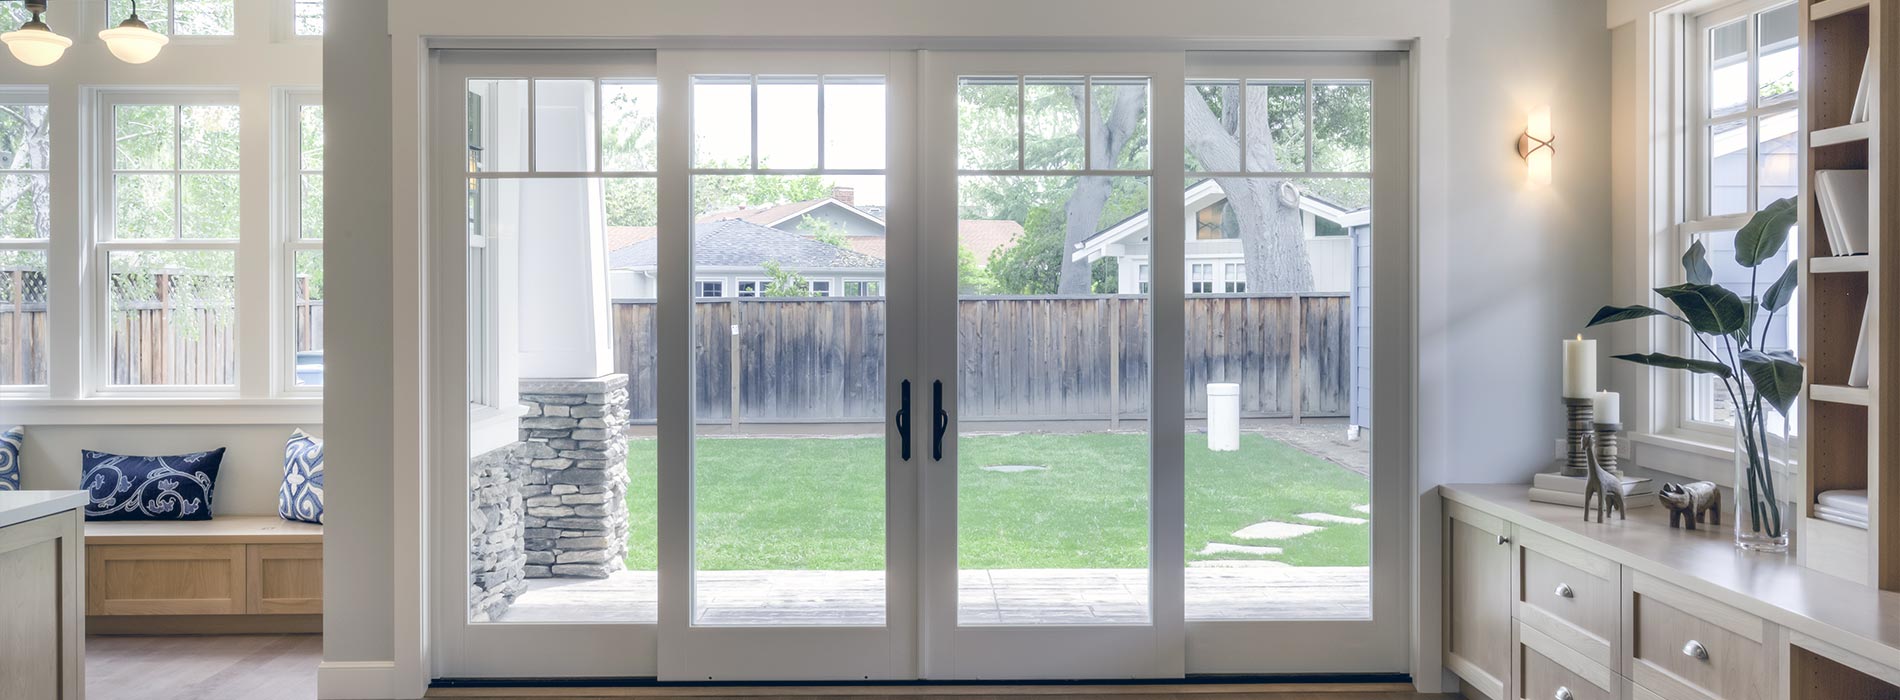 residential-window-glazing